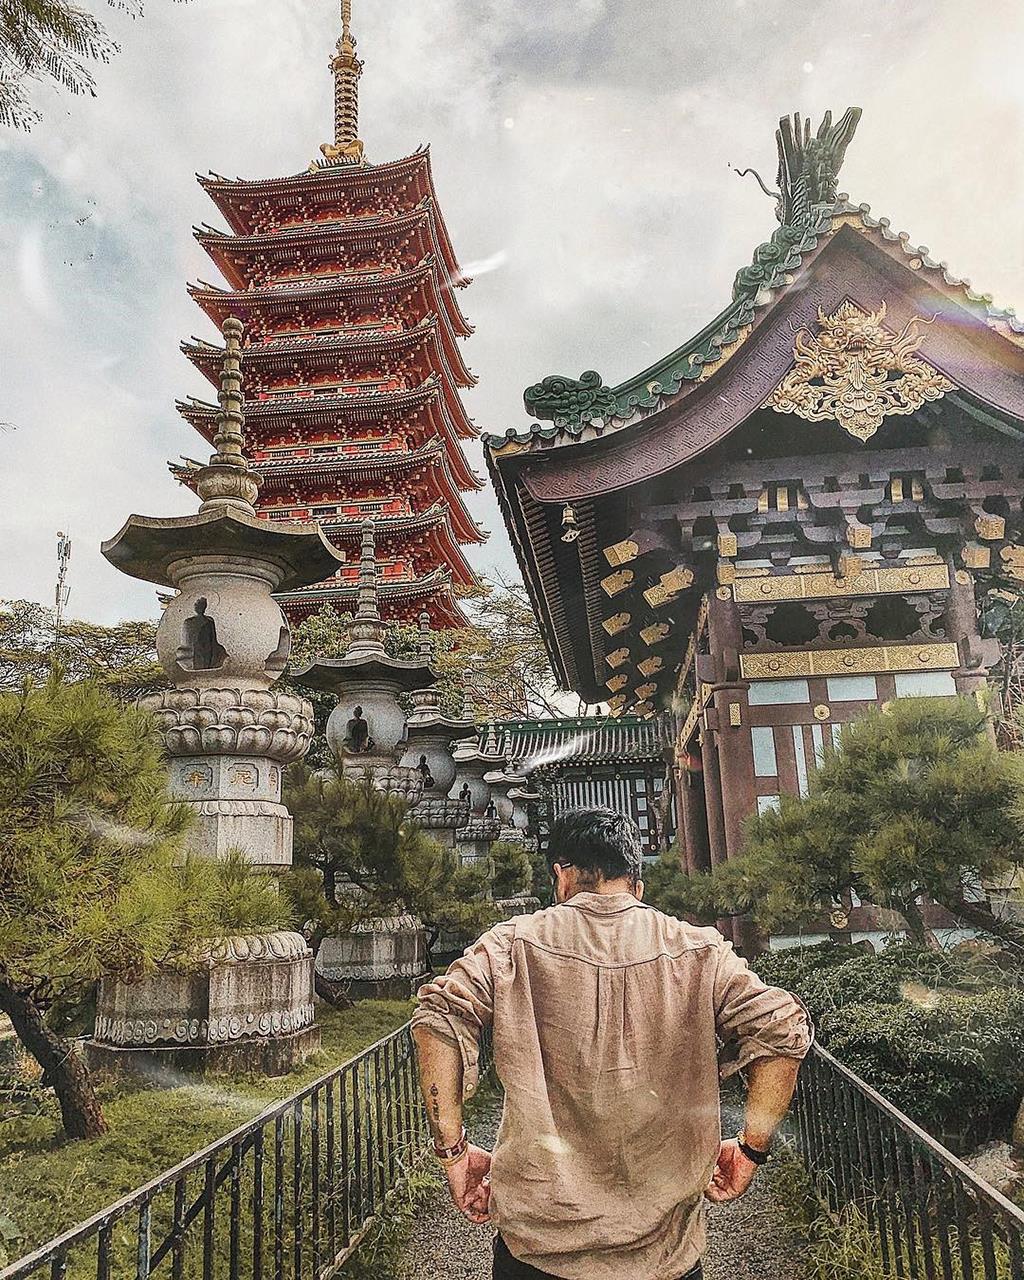 Kinh nghiệm check in chùa Minh Thành, kiến trúc Nhật Bản đặc sắc tại Pleiku 10